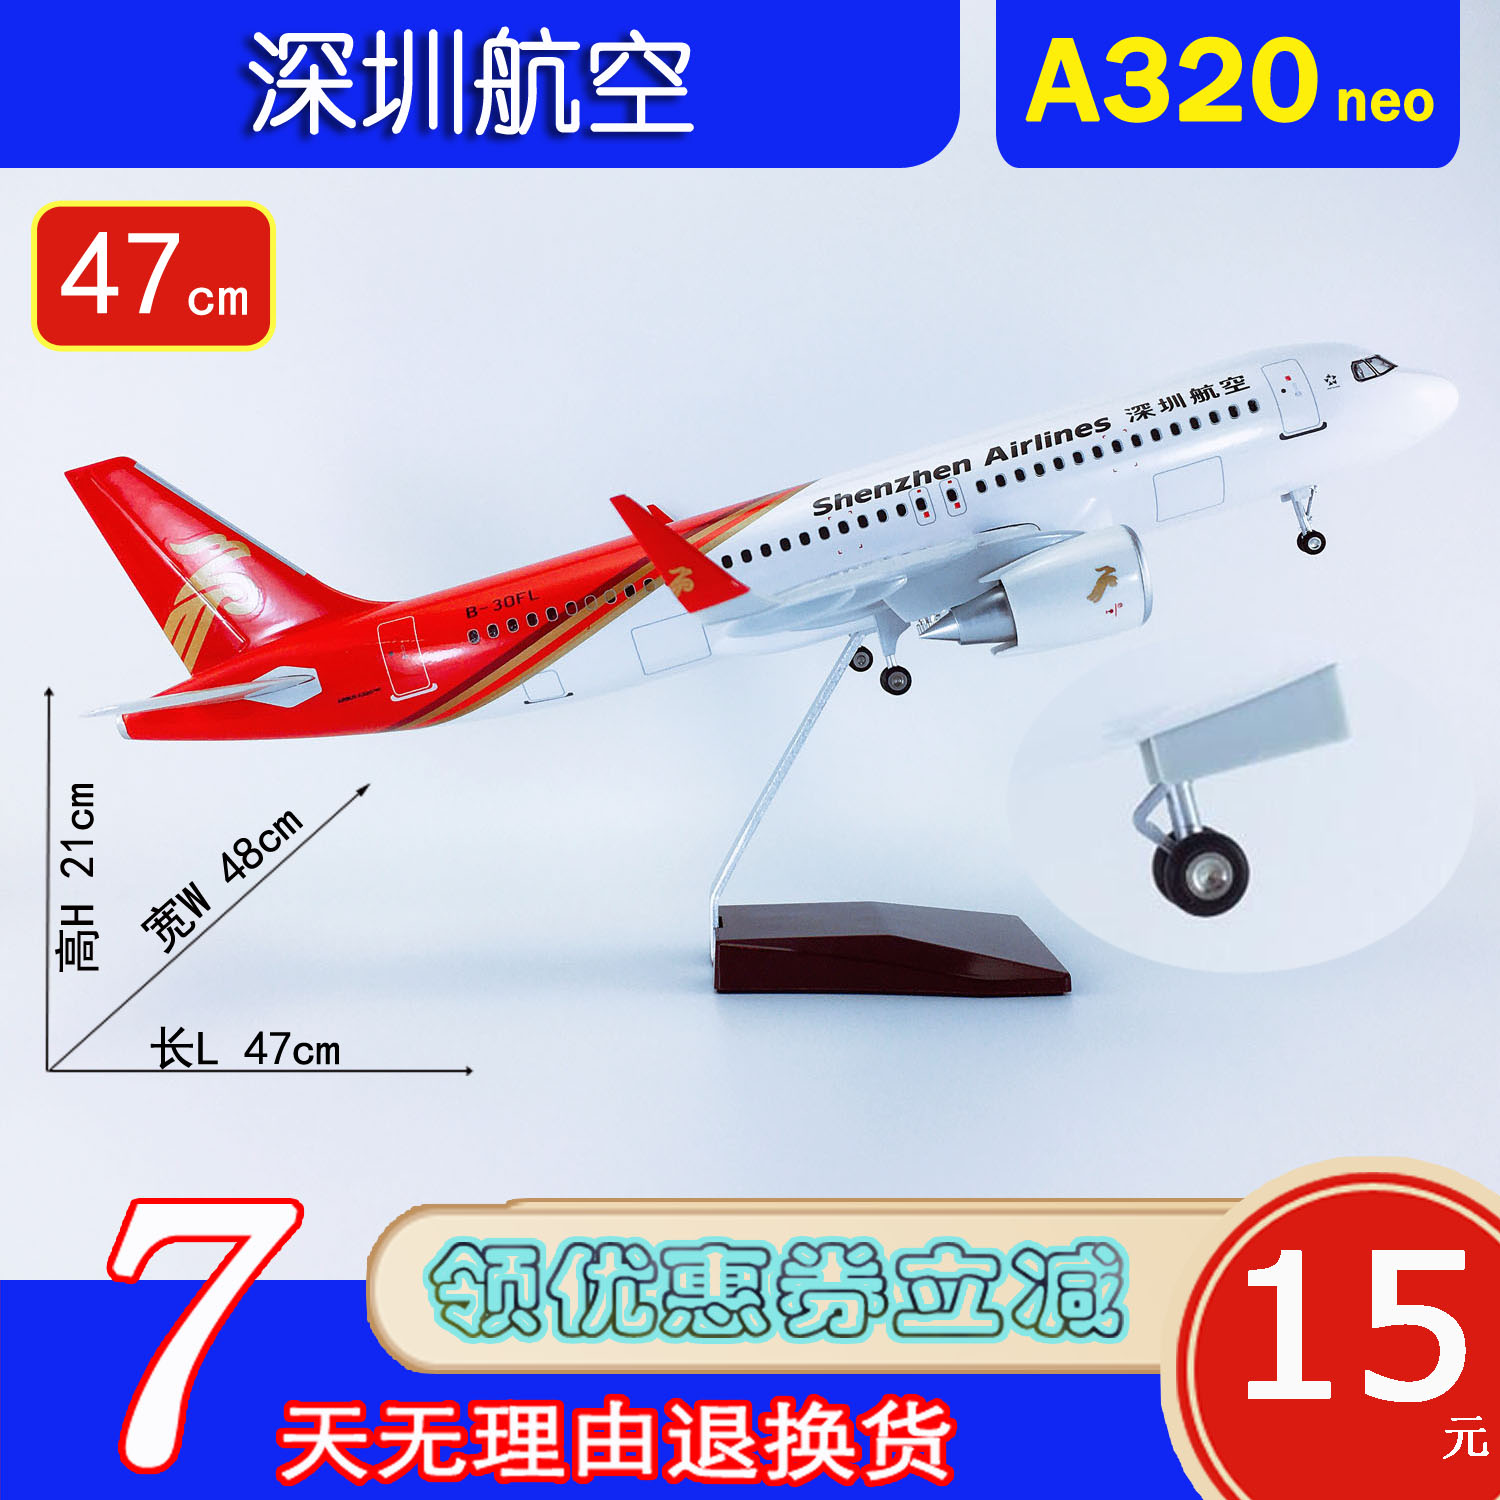 深圳航空320